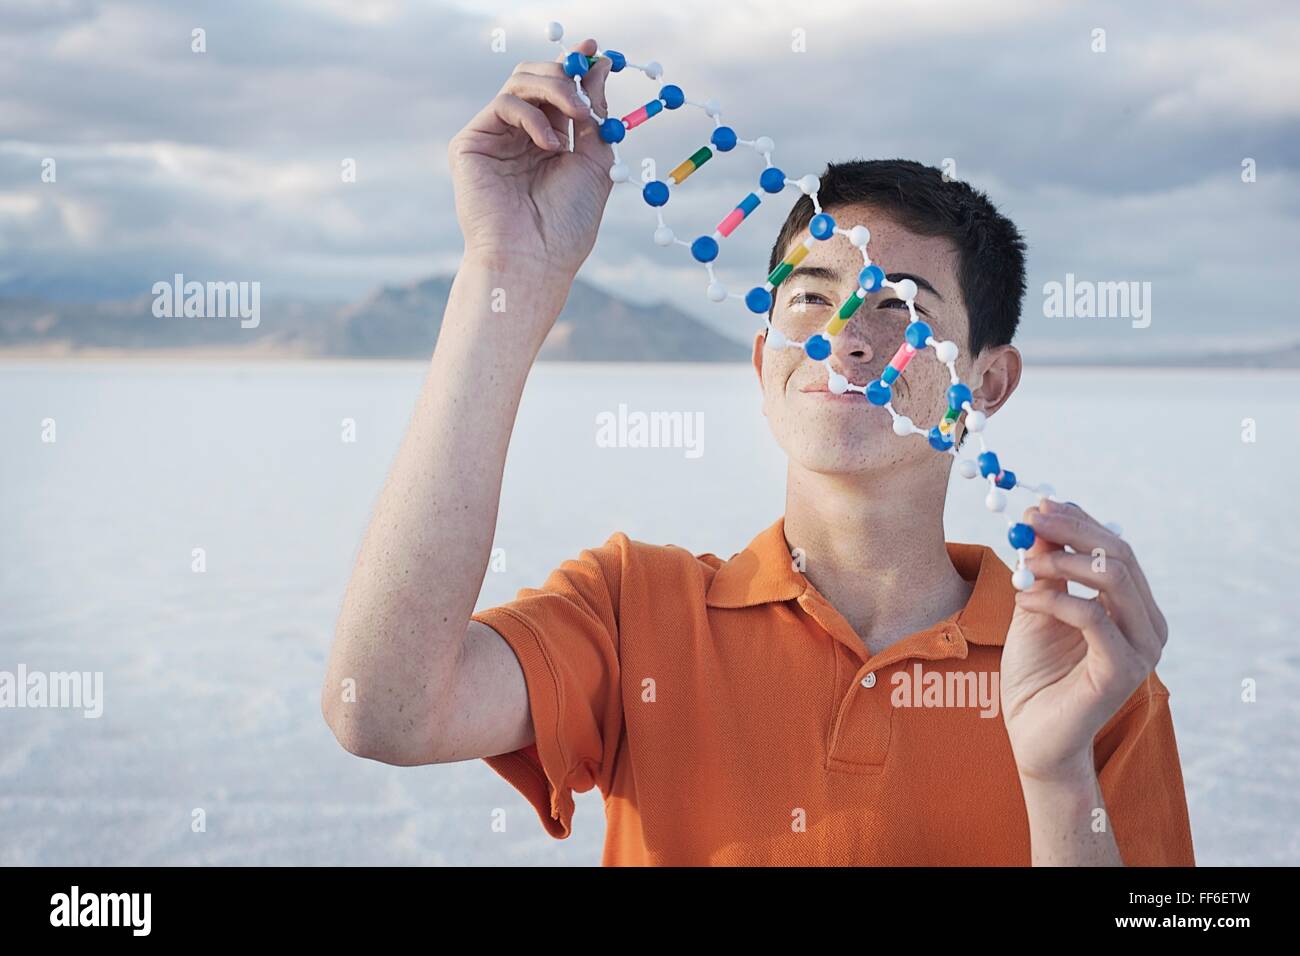 Ein Teenager in eine orange Polo-Shirt, eine molekulare Struktur-Modell hält und es untersuchen. Stockfoto